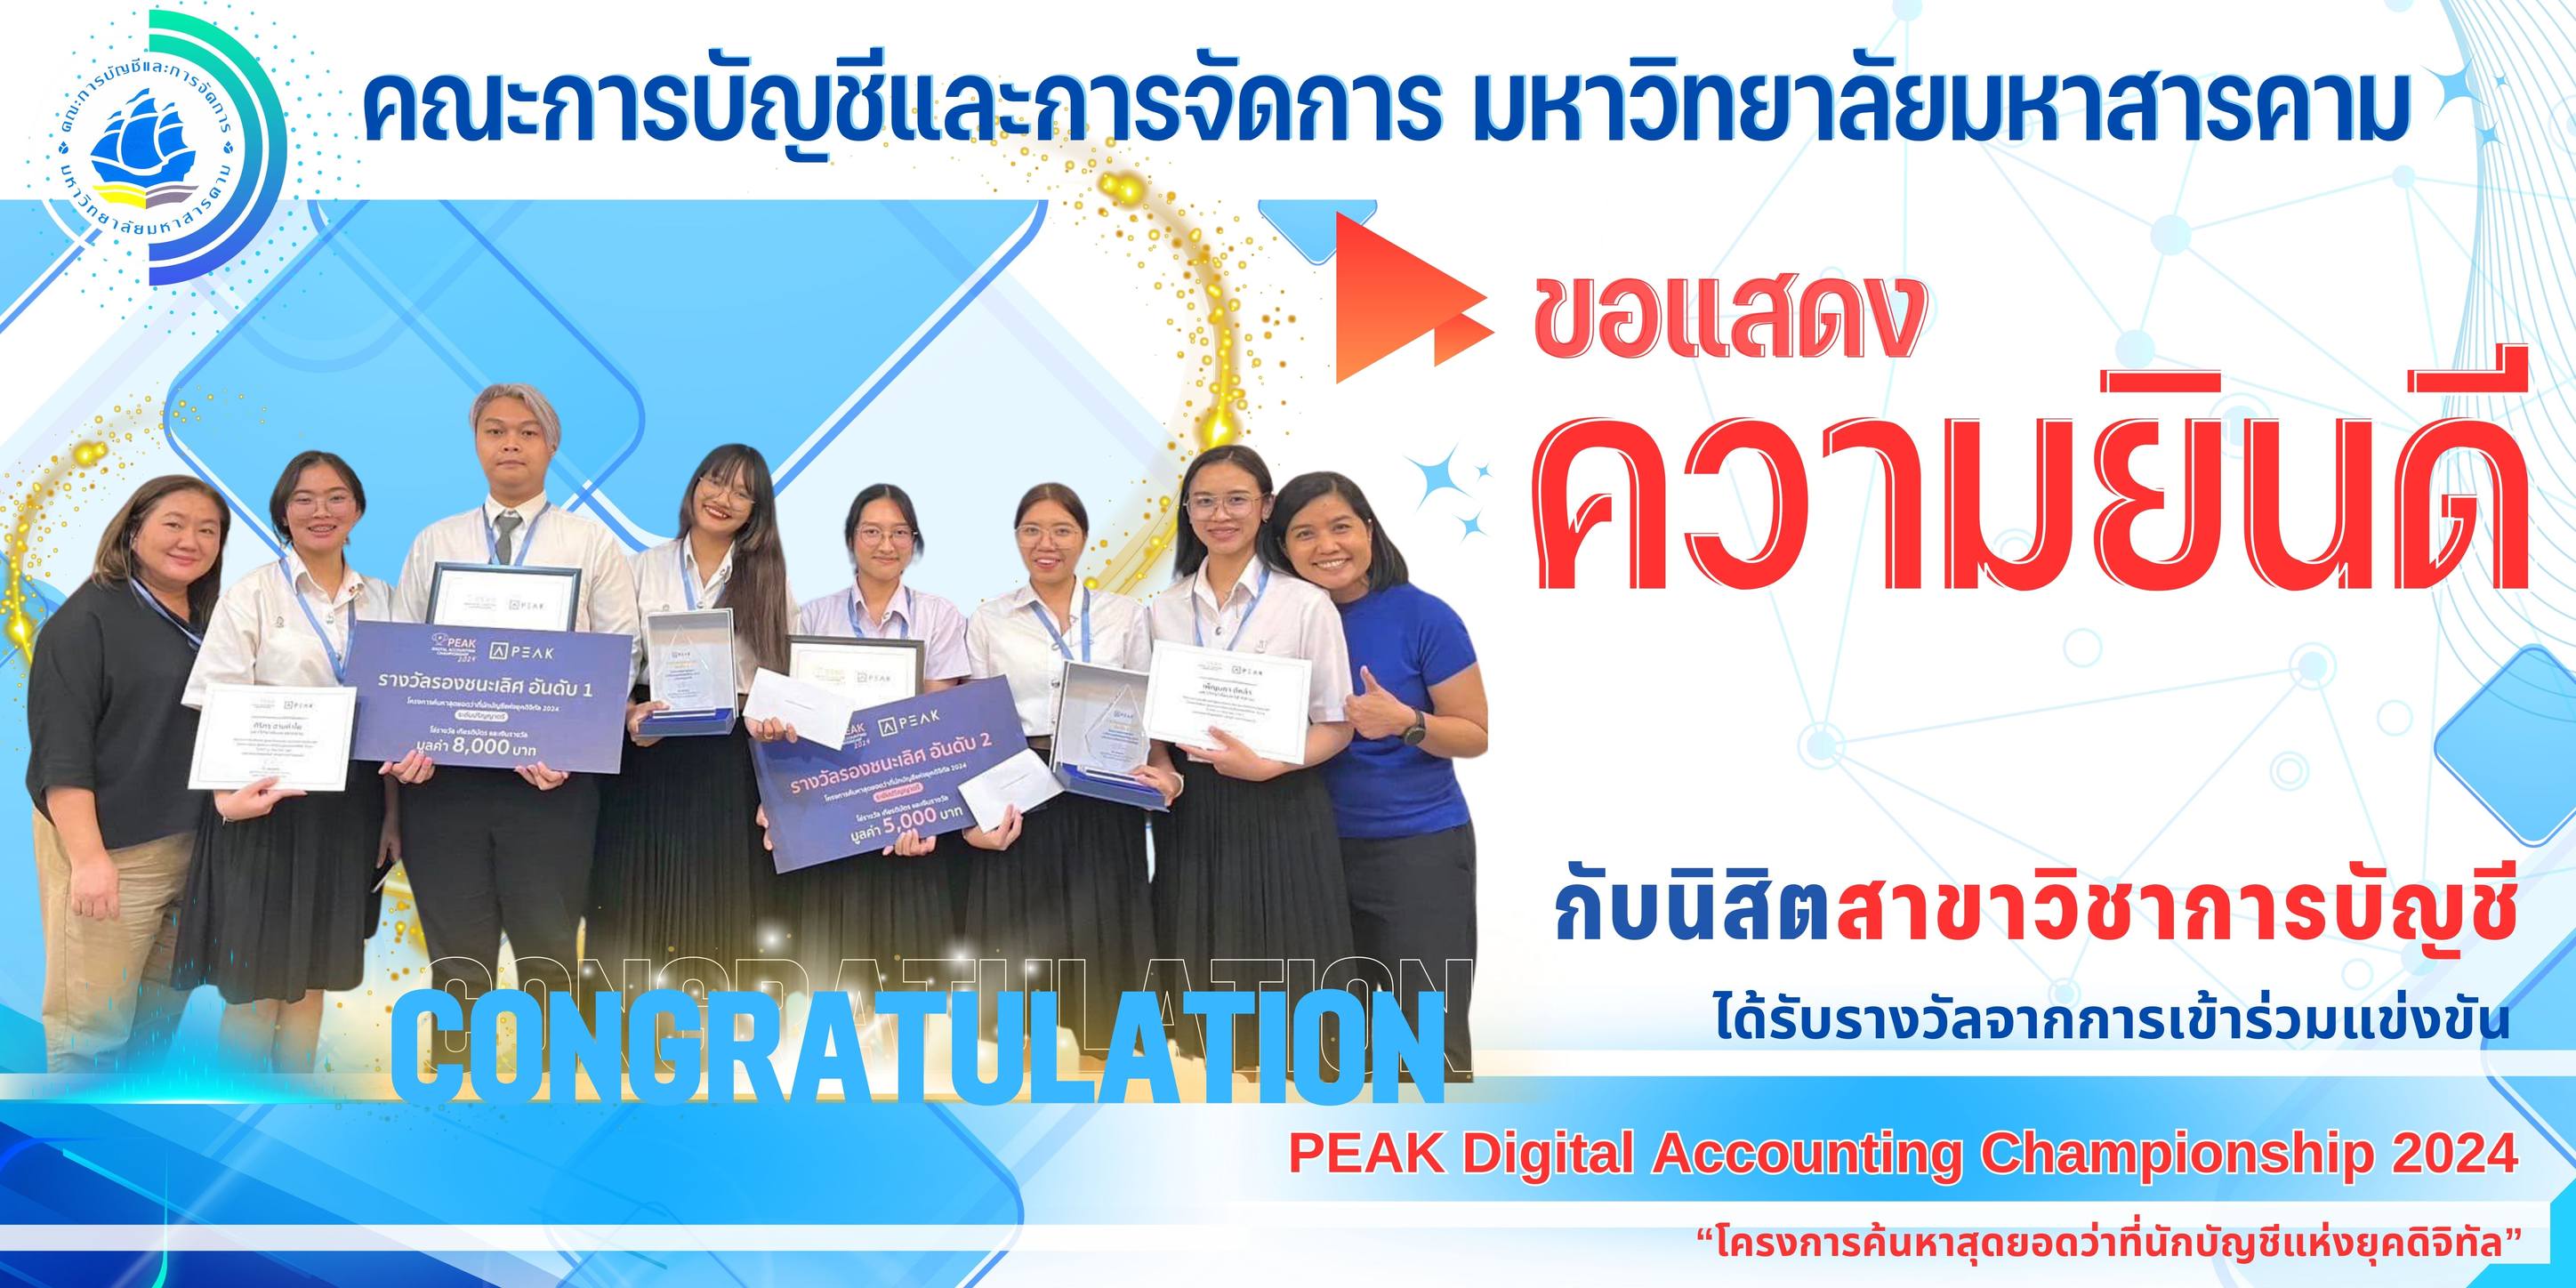 นิสิต MBS คว้า 3 รางวัลจากการแข่งขัน PEAK Digital Accounting Championship 2024 คณะการบัญชีและการจัดการ มหาวิทยาลัยมหาสารคาม